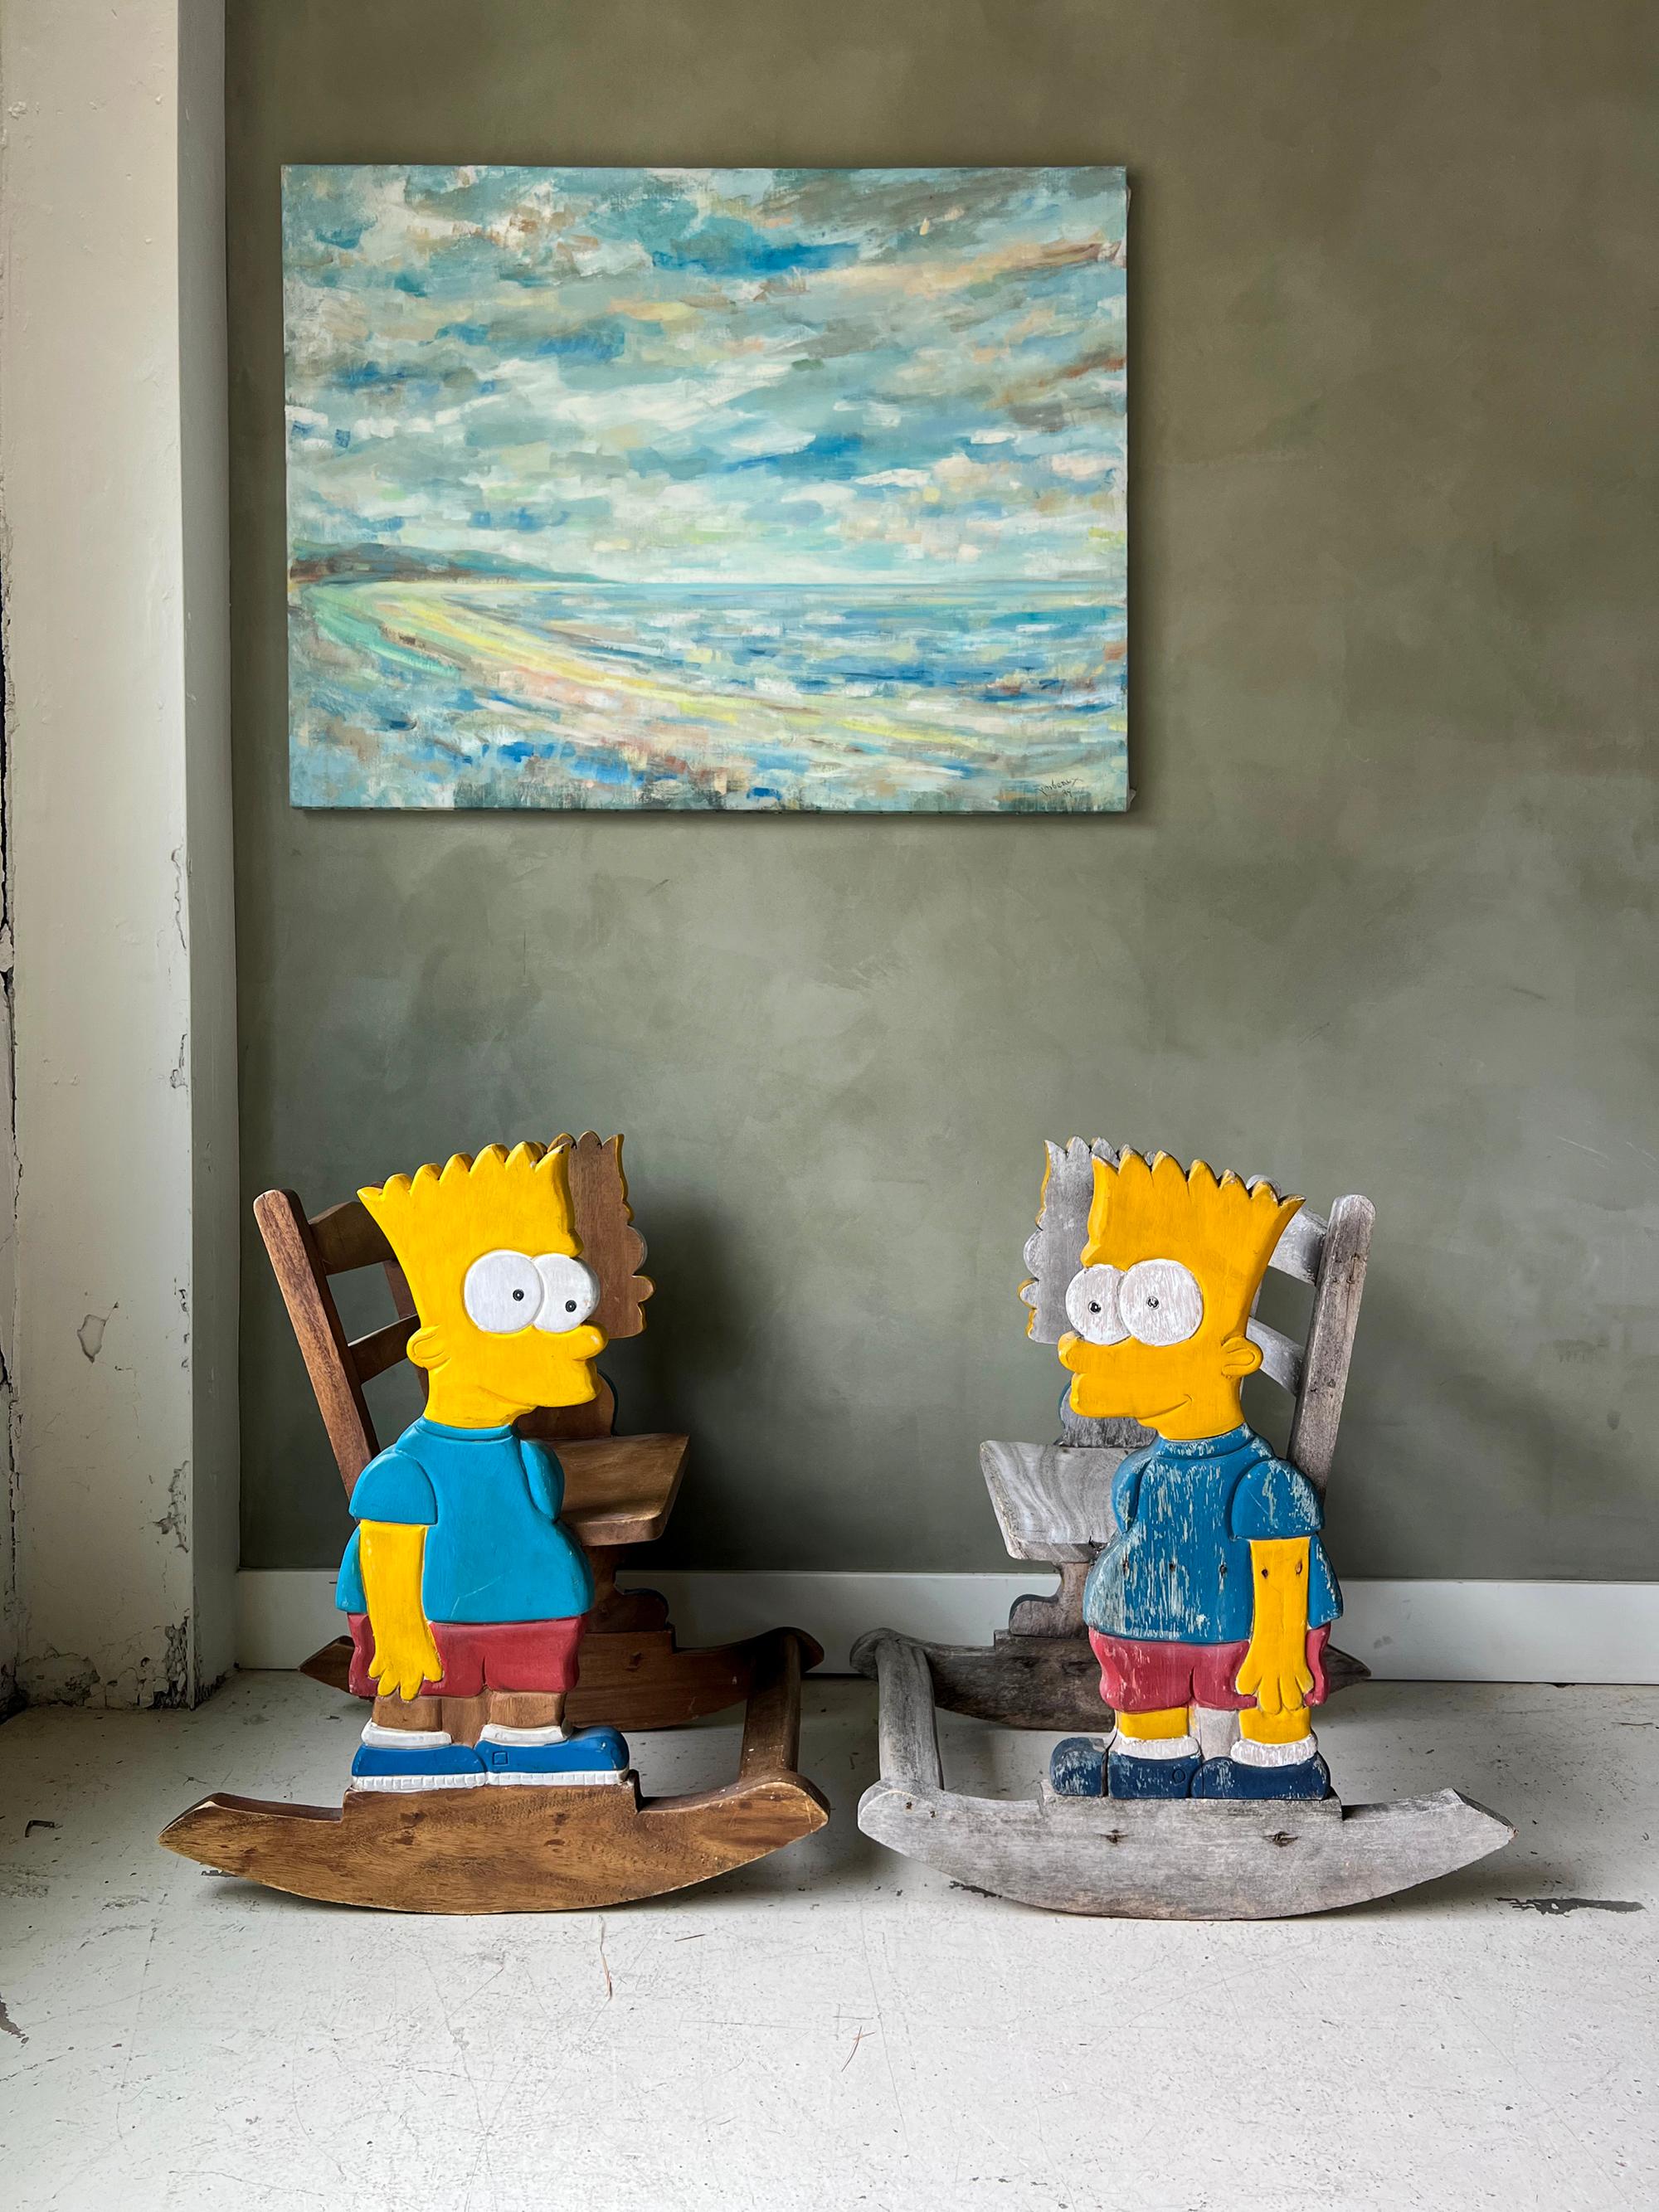 Paire de chaises à bascule Bart Simpson faites à la main, de taille enfant. État vintage, l'un est plus usé que l'autre mais les deux présentent une usure conforme à l'âge. Construction en bois massif, beaux détails montrant les vêtements, les